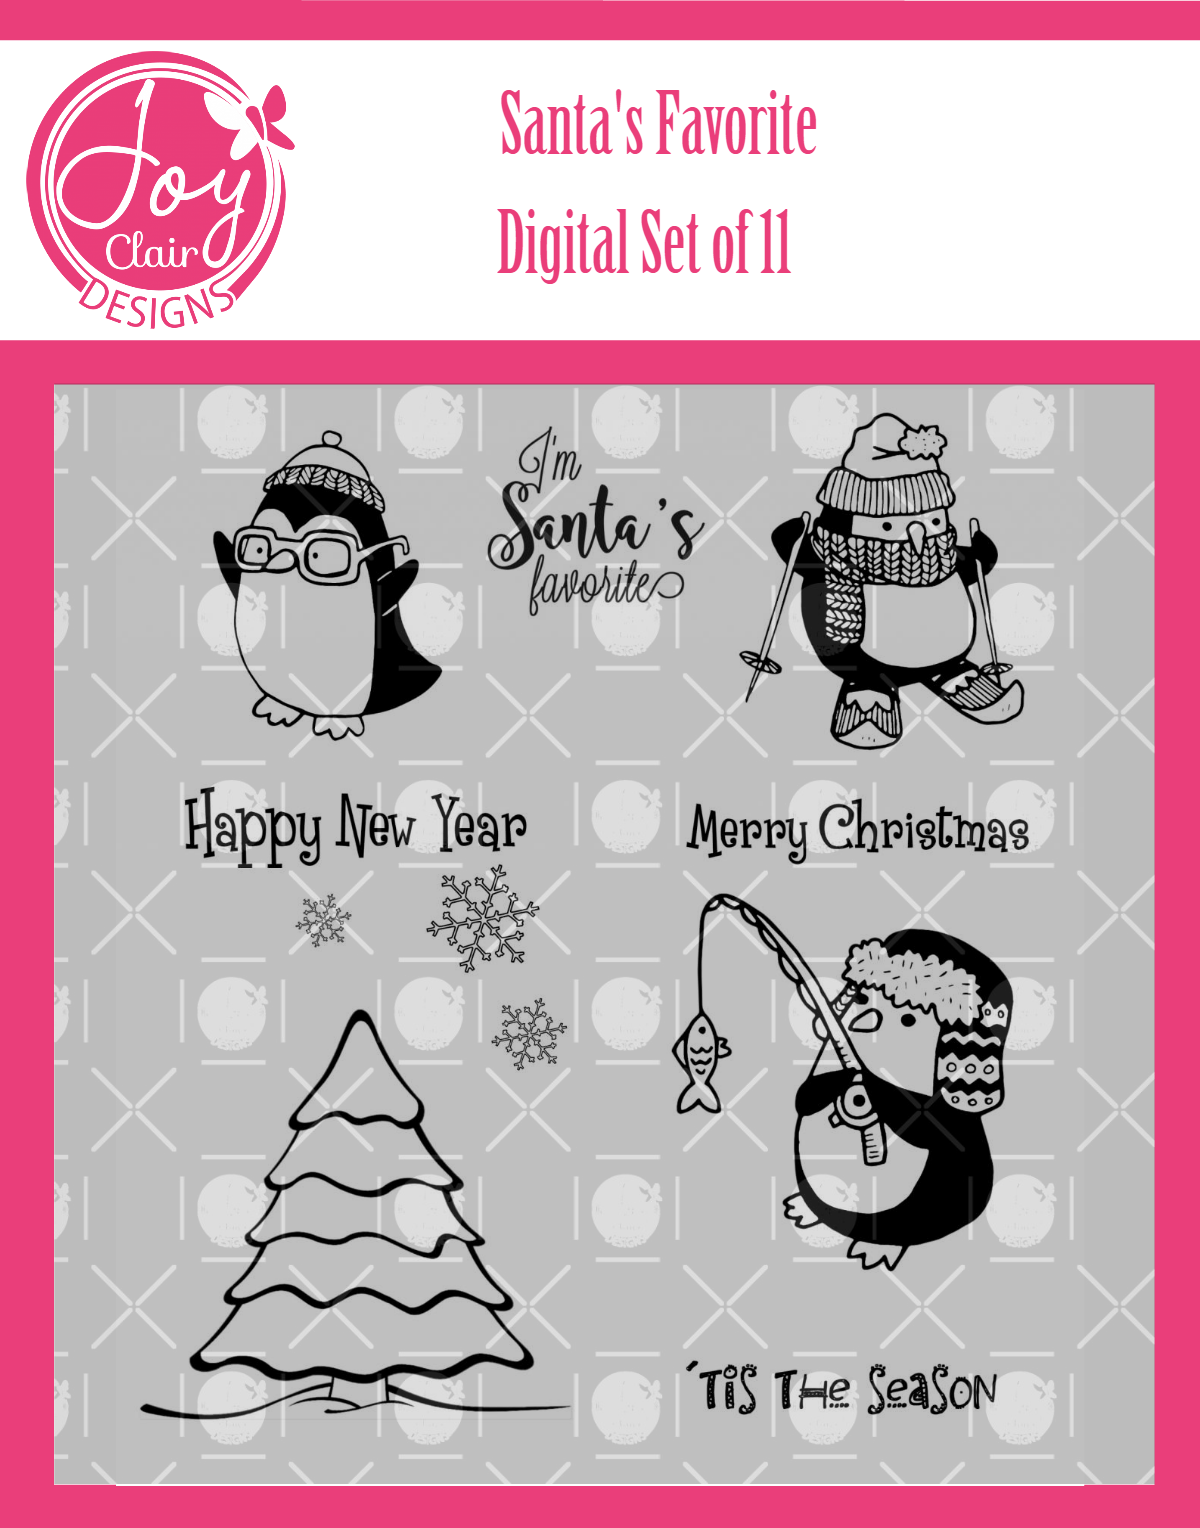 Santa's Favorite Digital Stamps by Joy Clair